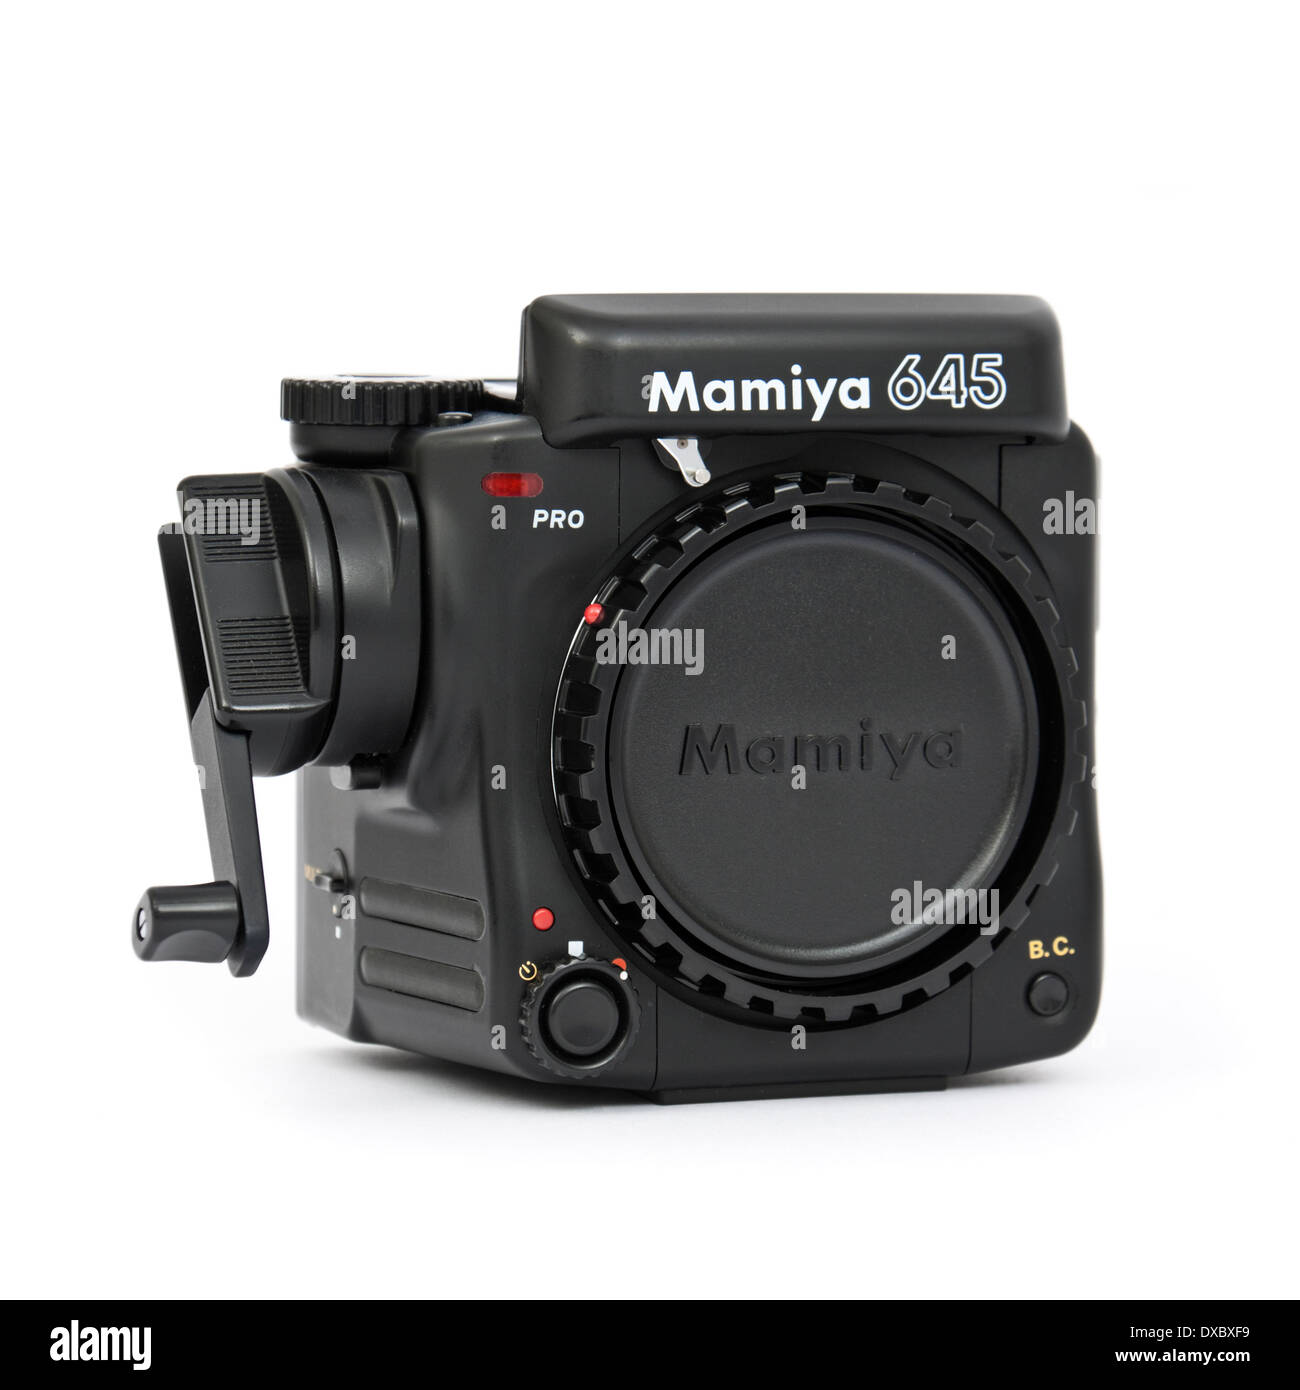 Mamiya 645 Pro professionnel moyen format film de l'appareil photo, en production entre 1993-1998 Banque D'Images